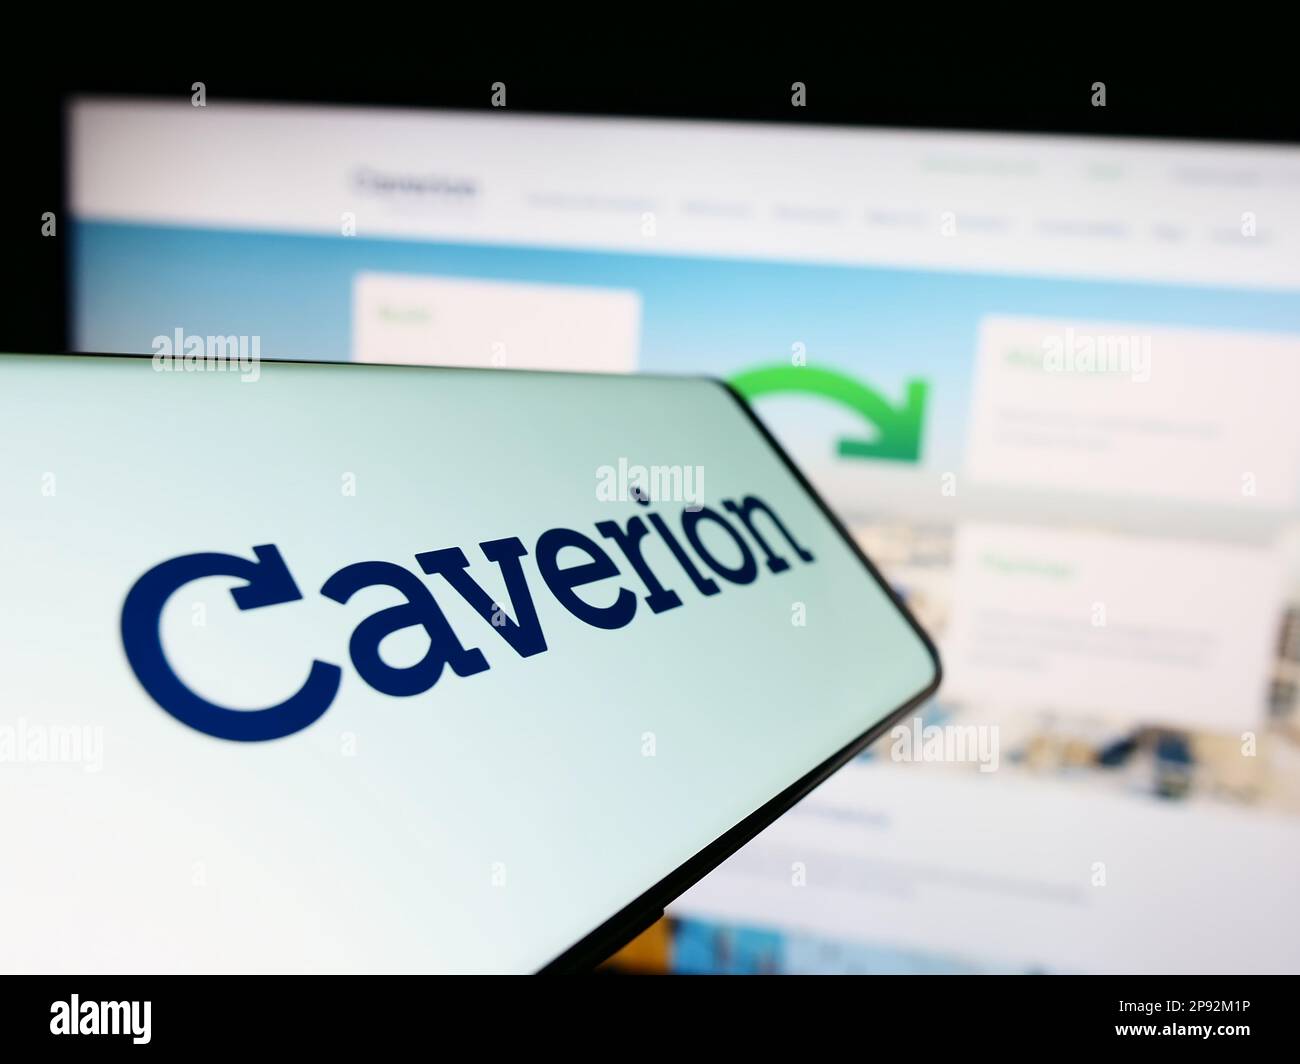 Smartphone avec logo de la société de technologie de bâtiment Caverion Oyj sur l'écran en face du site Web d'affaires. Concentrez-vous sur le centre de l'écran du téléphone. Banque D'Images